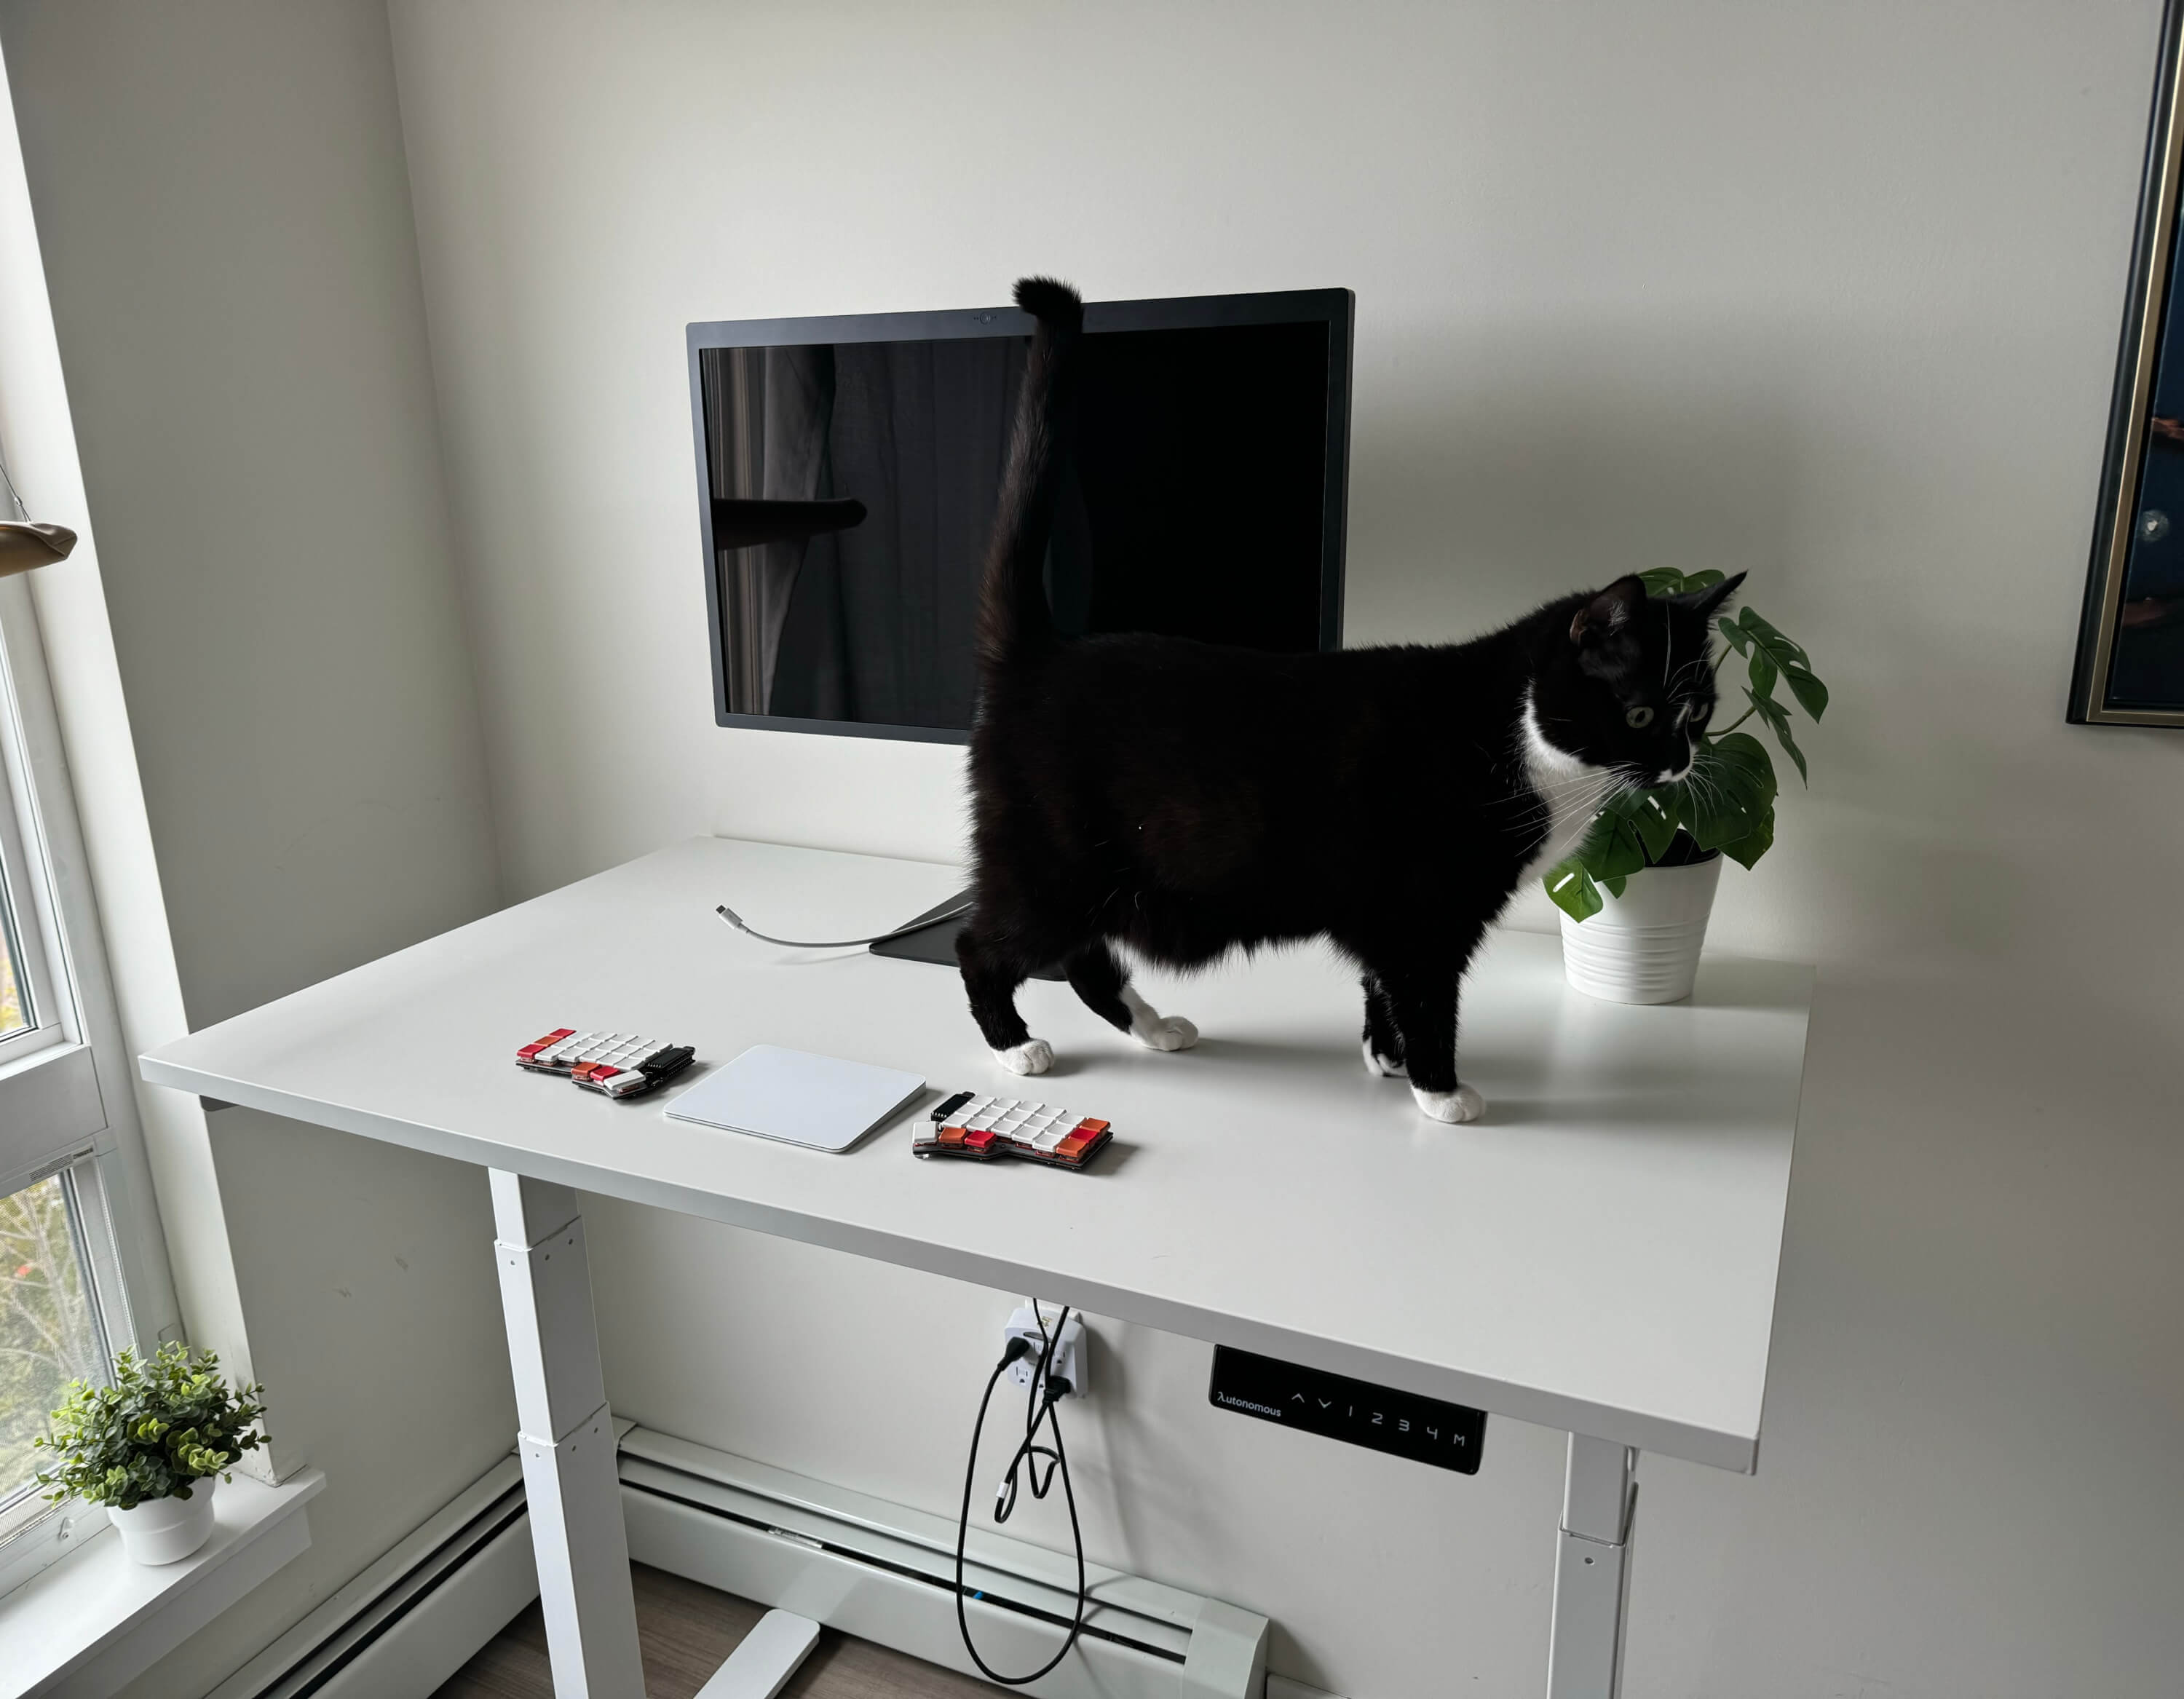 Black cat walking across white standing desk top in high desk position